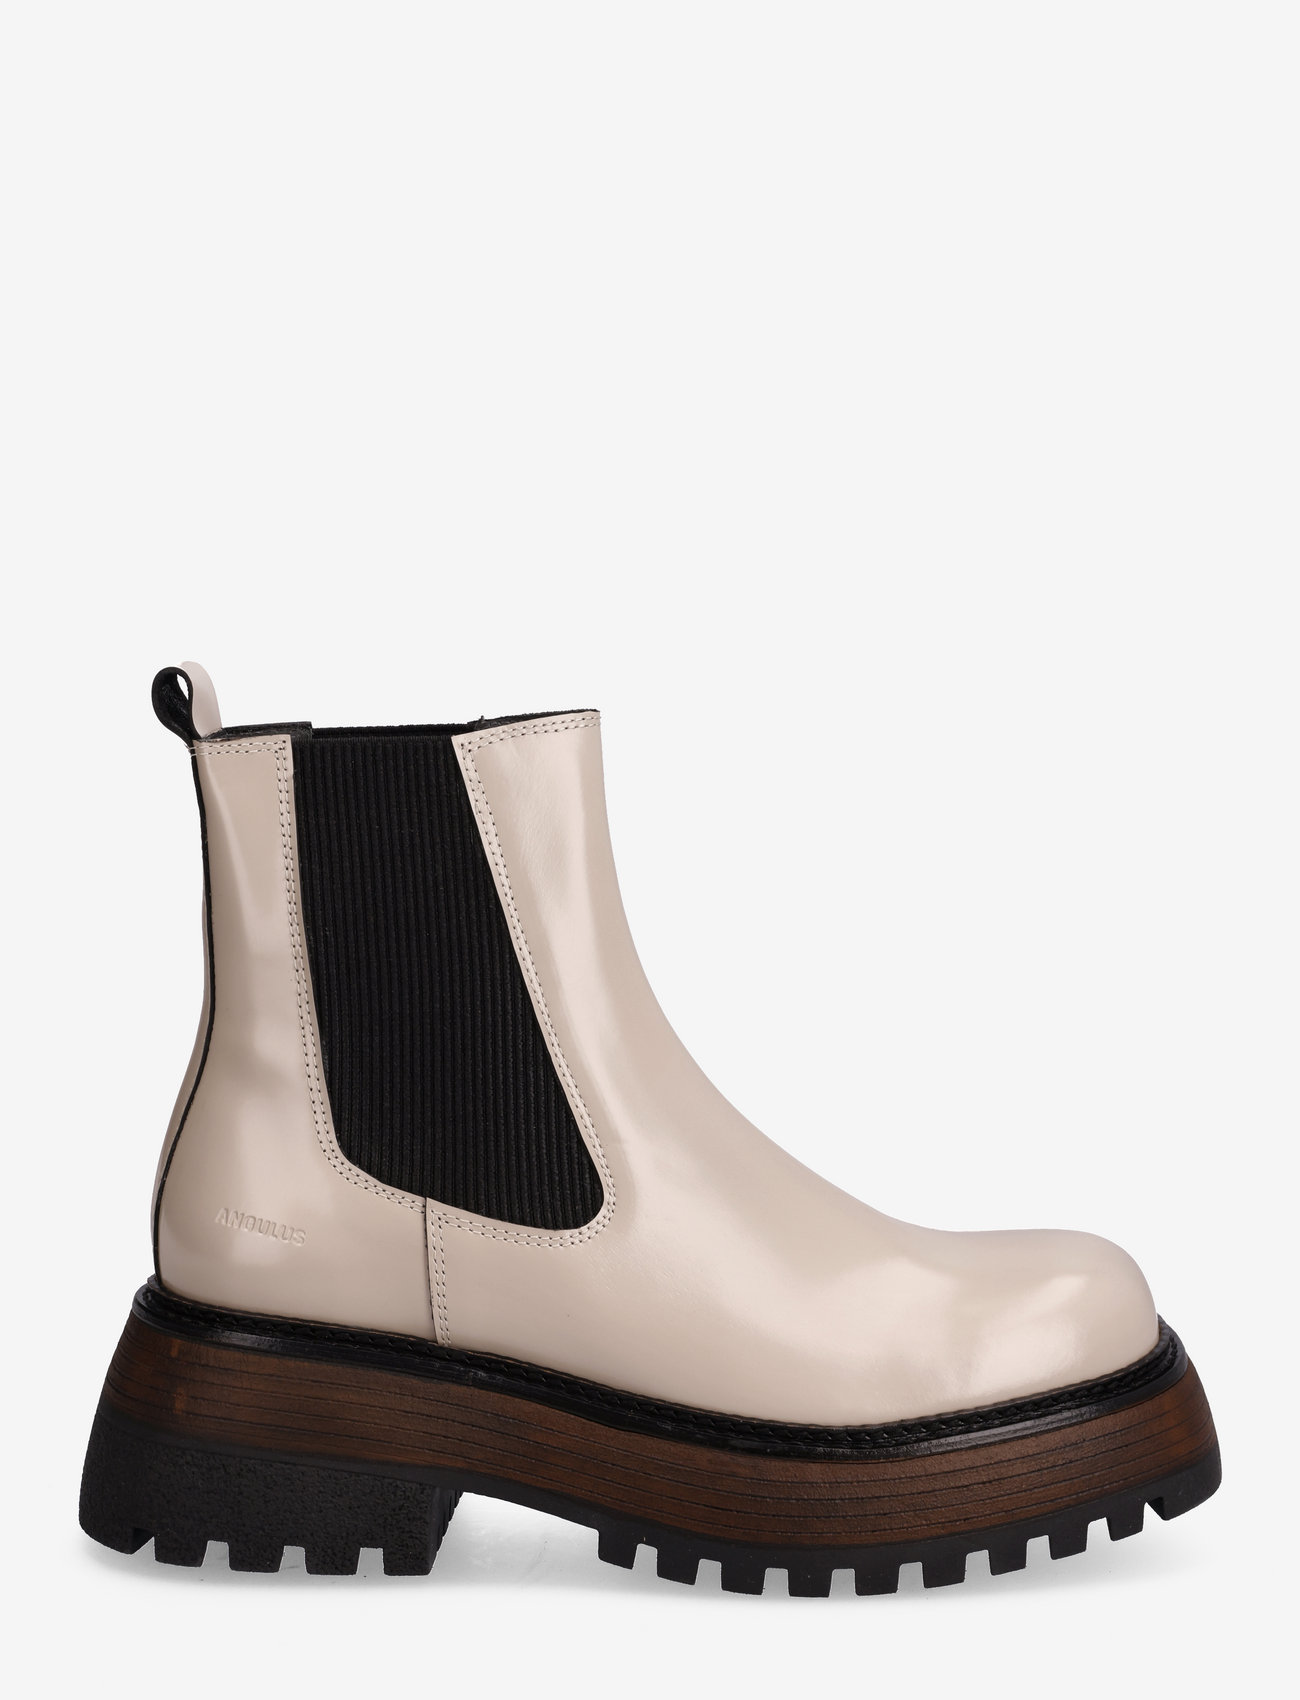 ANGULUS - Boots - flat - chelsea boots - 1402/019 beige/black - 1